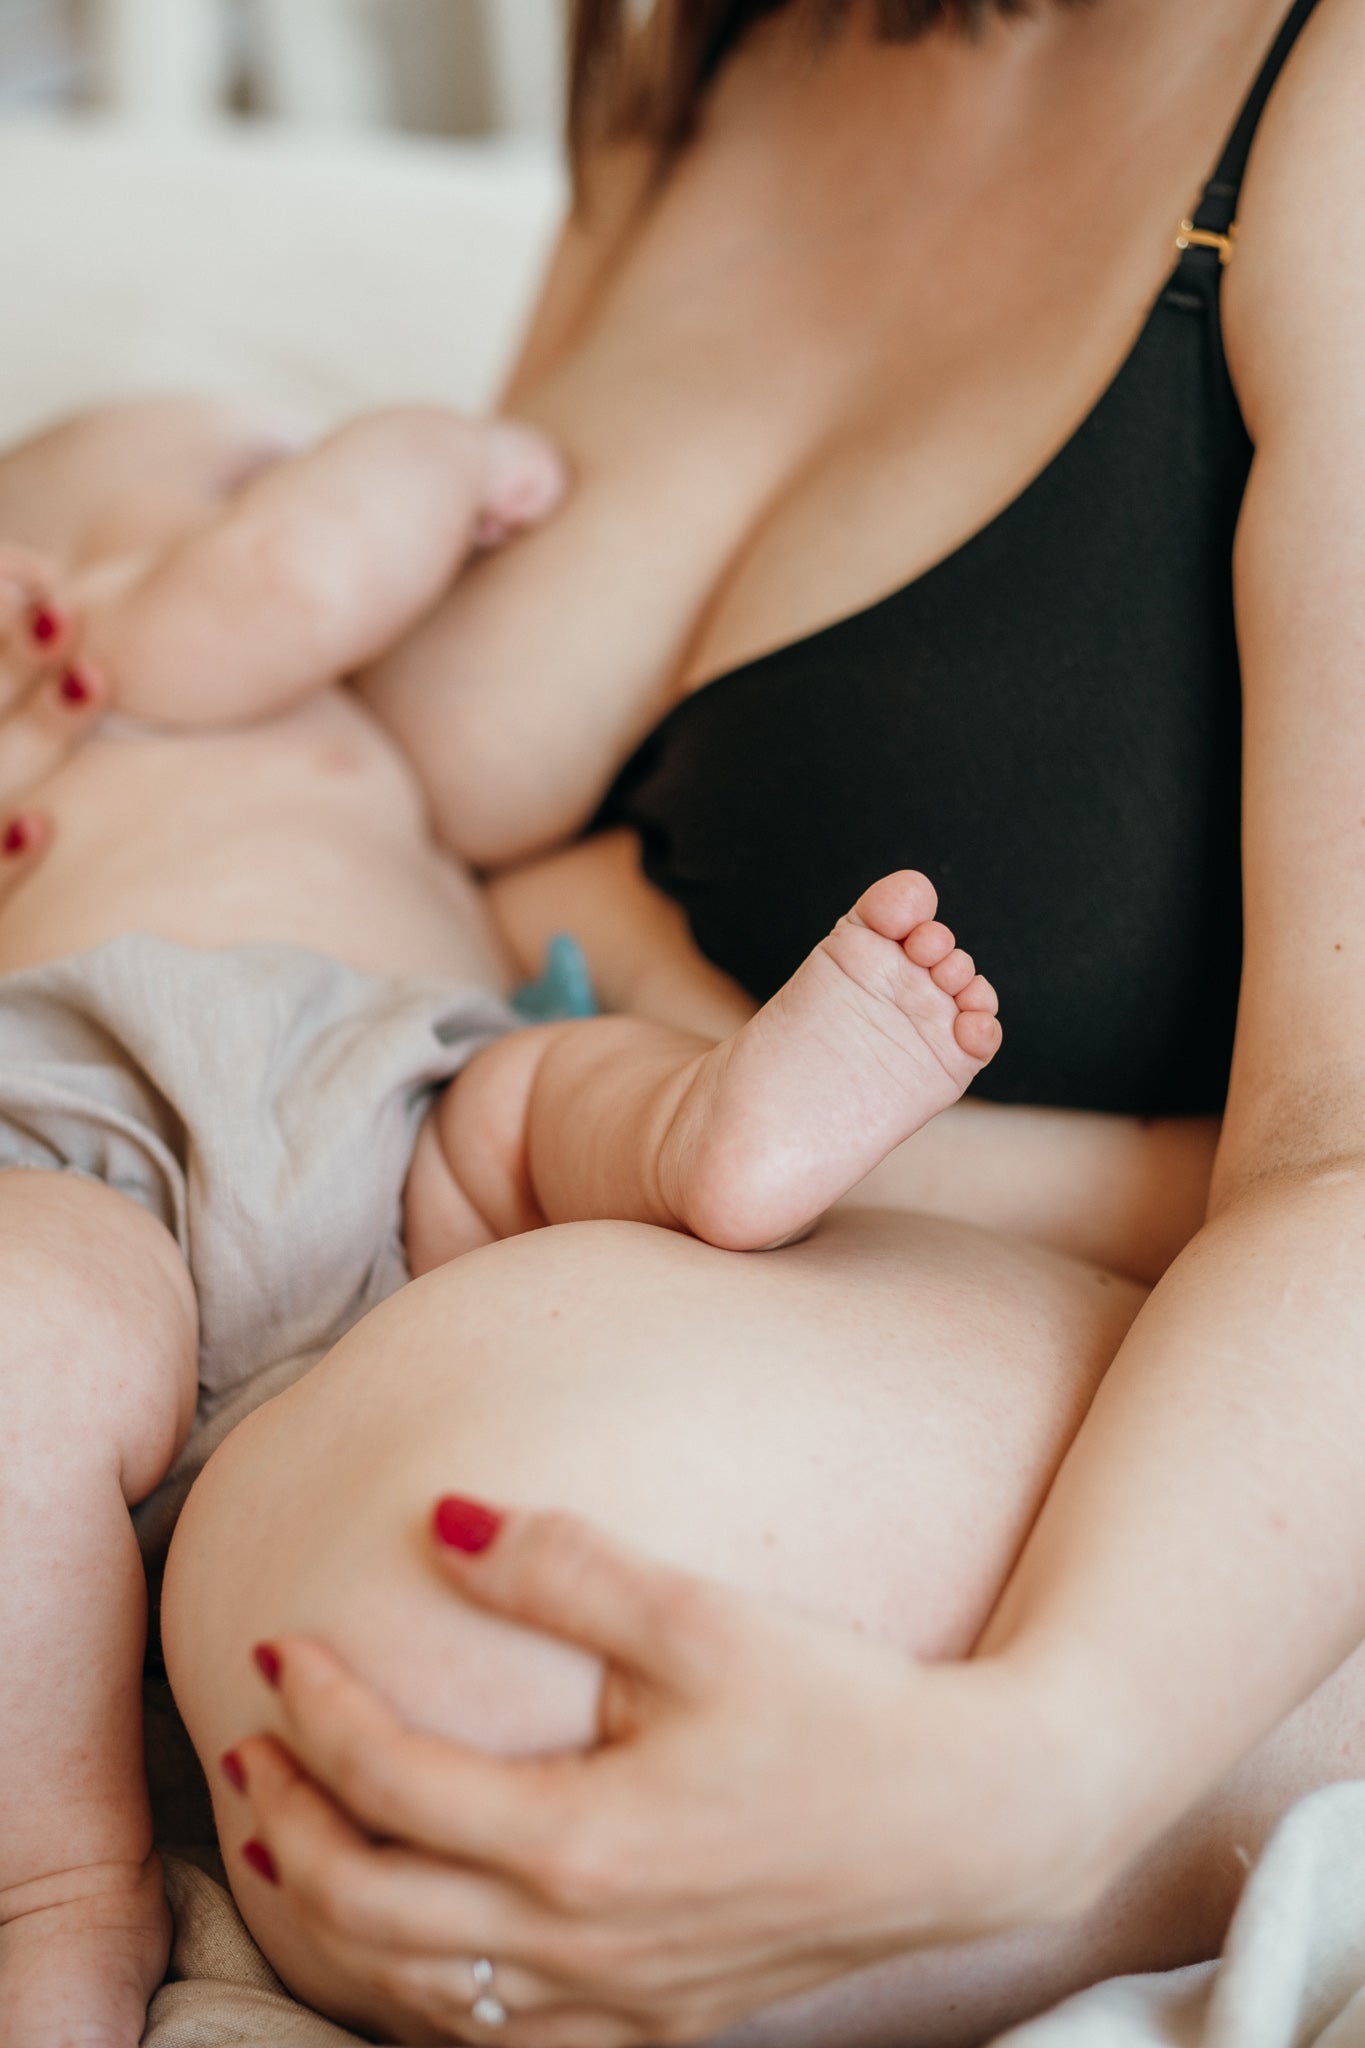 Woman sitting on bed breastfeeding her baby wearing black nursing bra